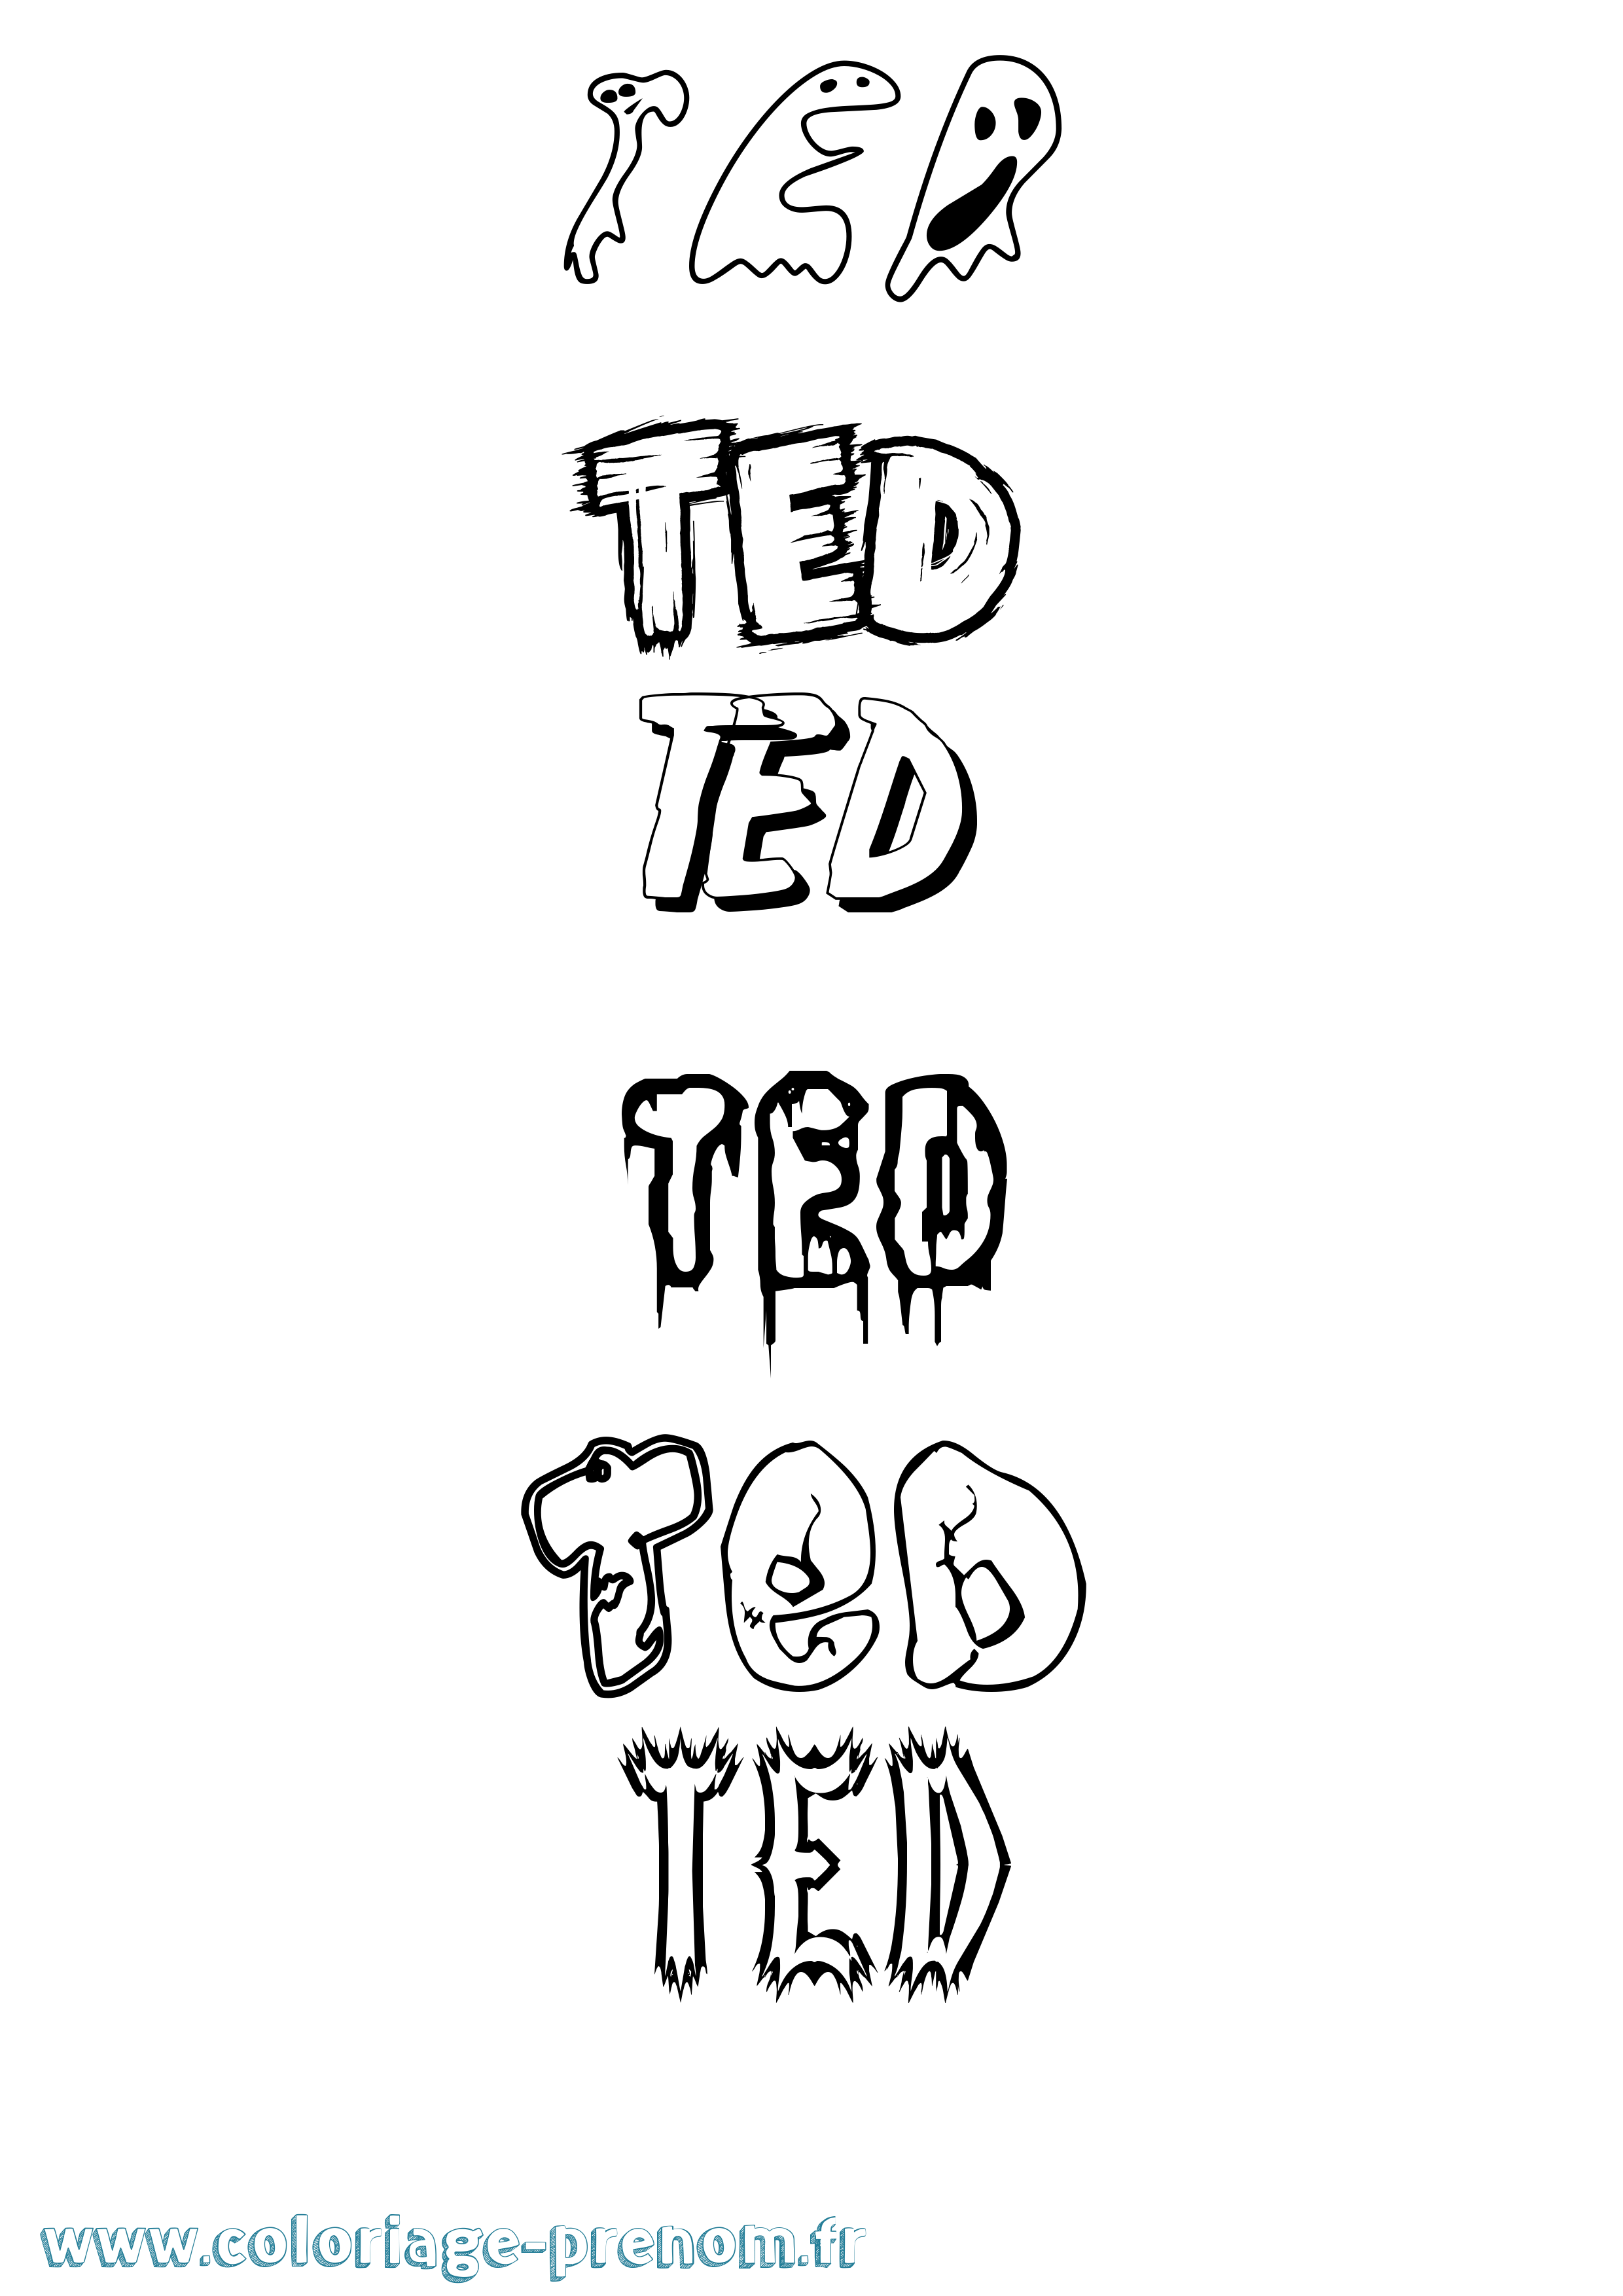 Coloriage prénom Ted Frisson